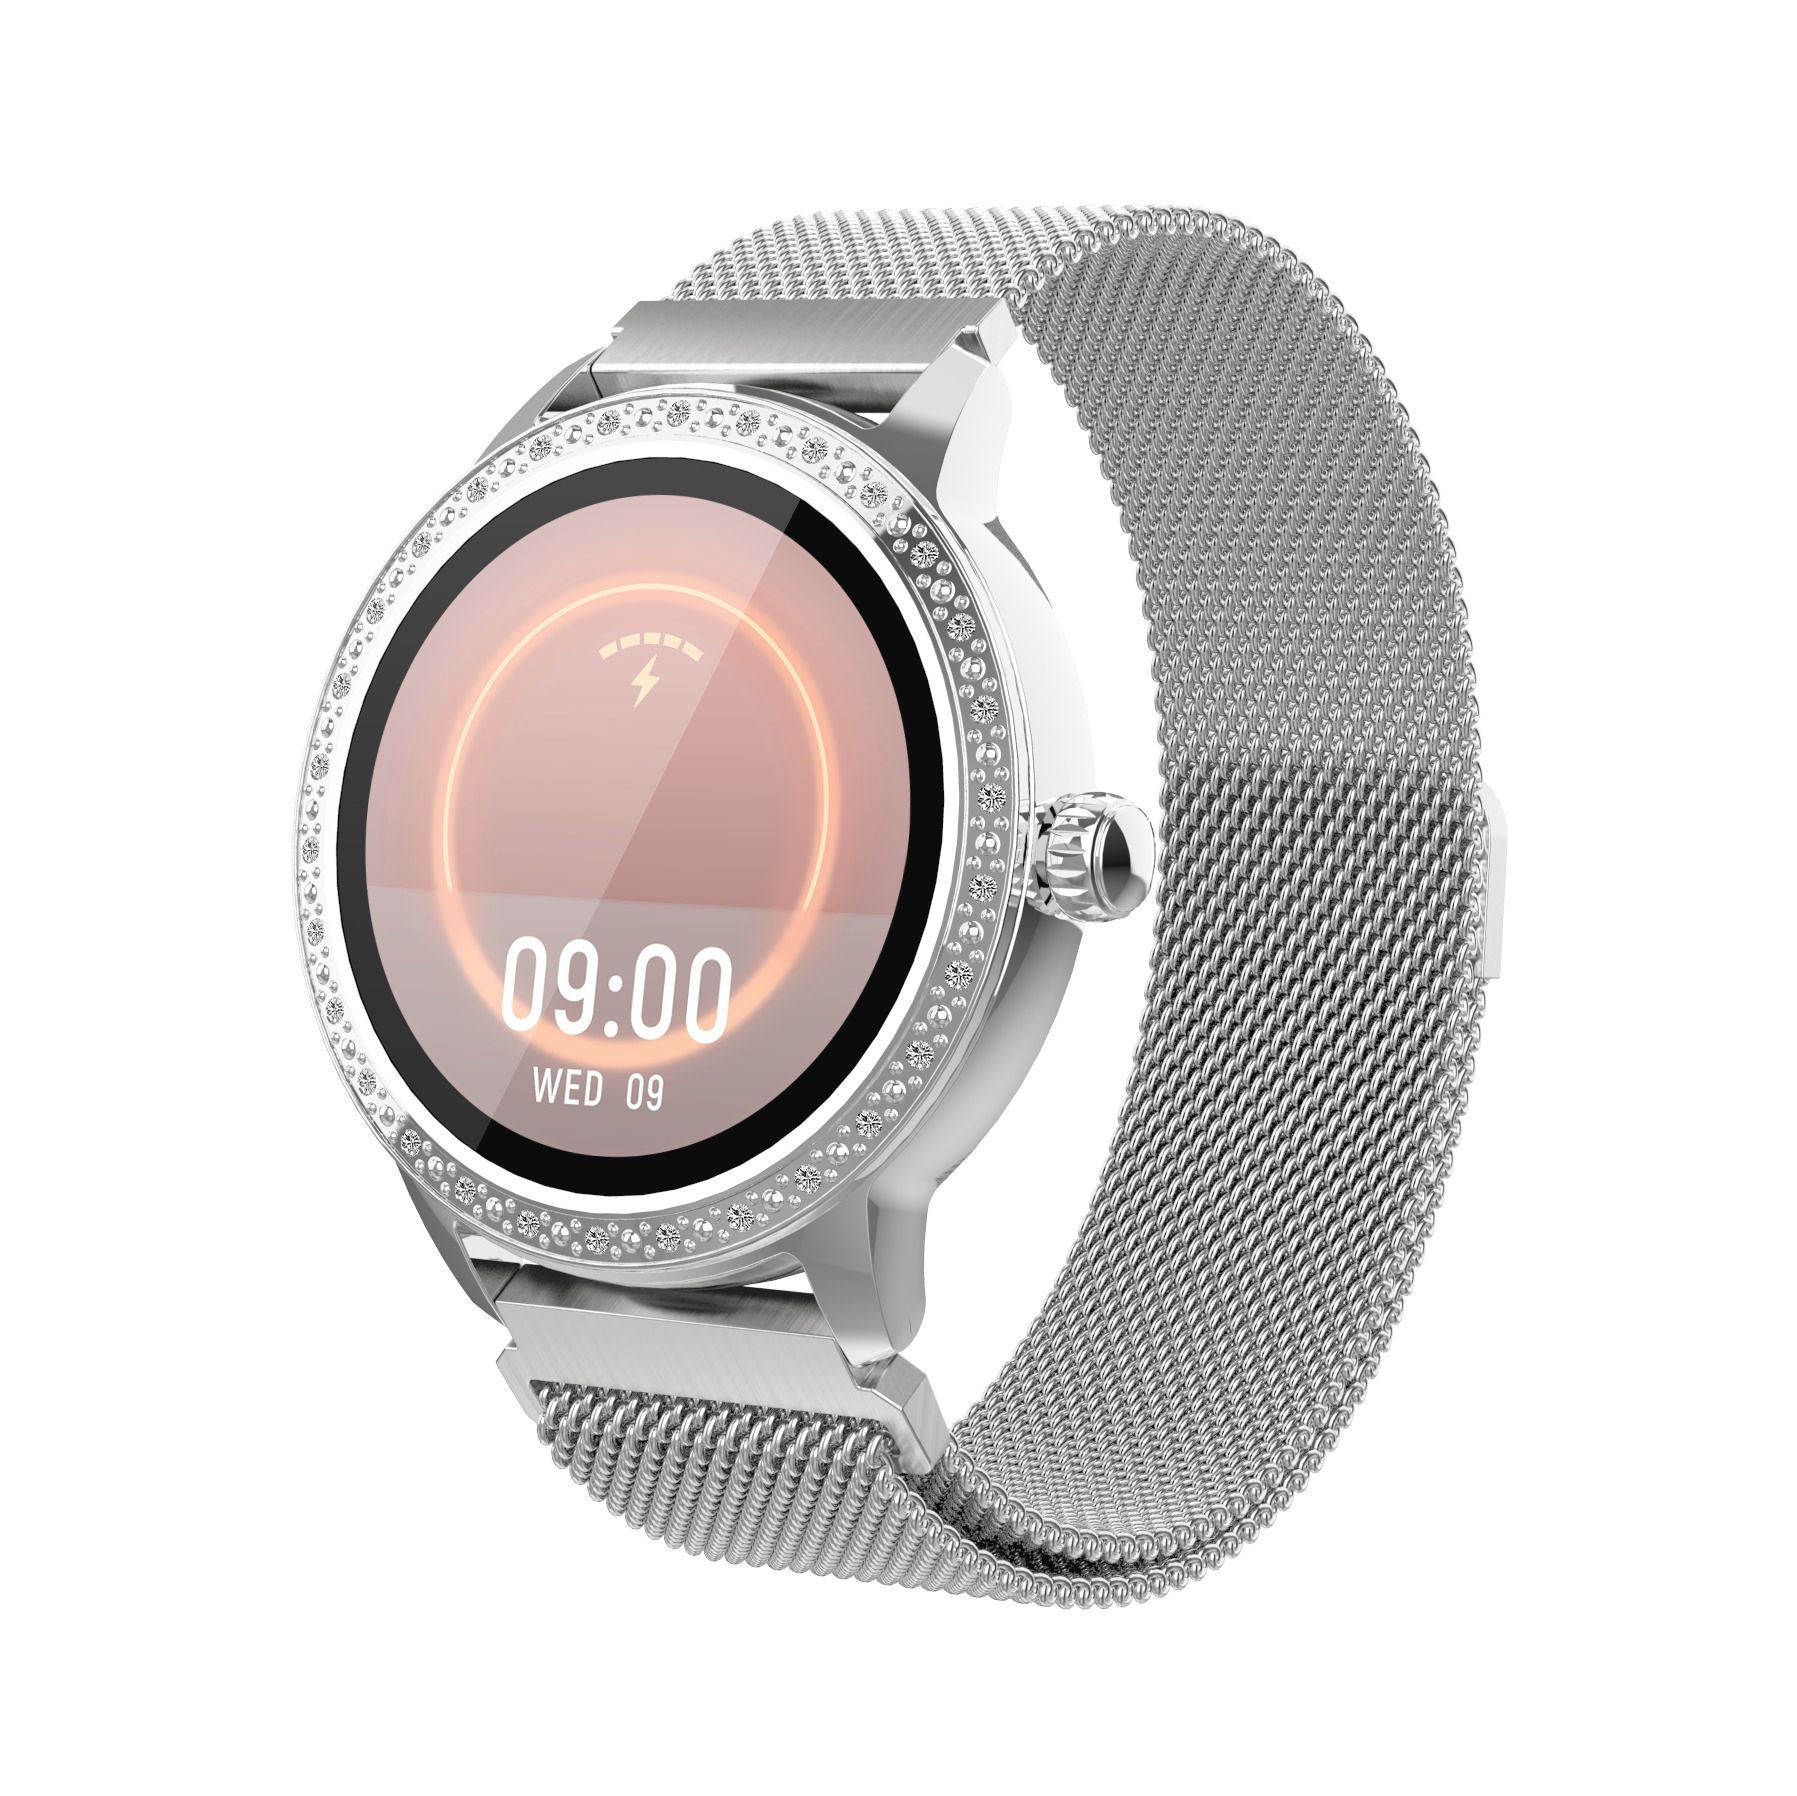 Denver Damen Smartwatch SW-360S silber 24,5 mm Bluetooth Uhr 1,2" Touchdisplay